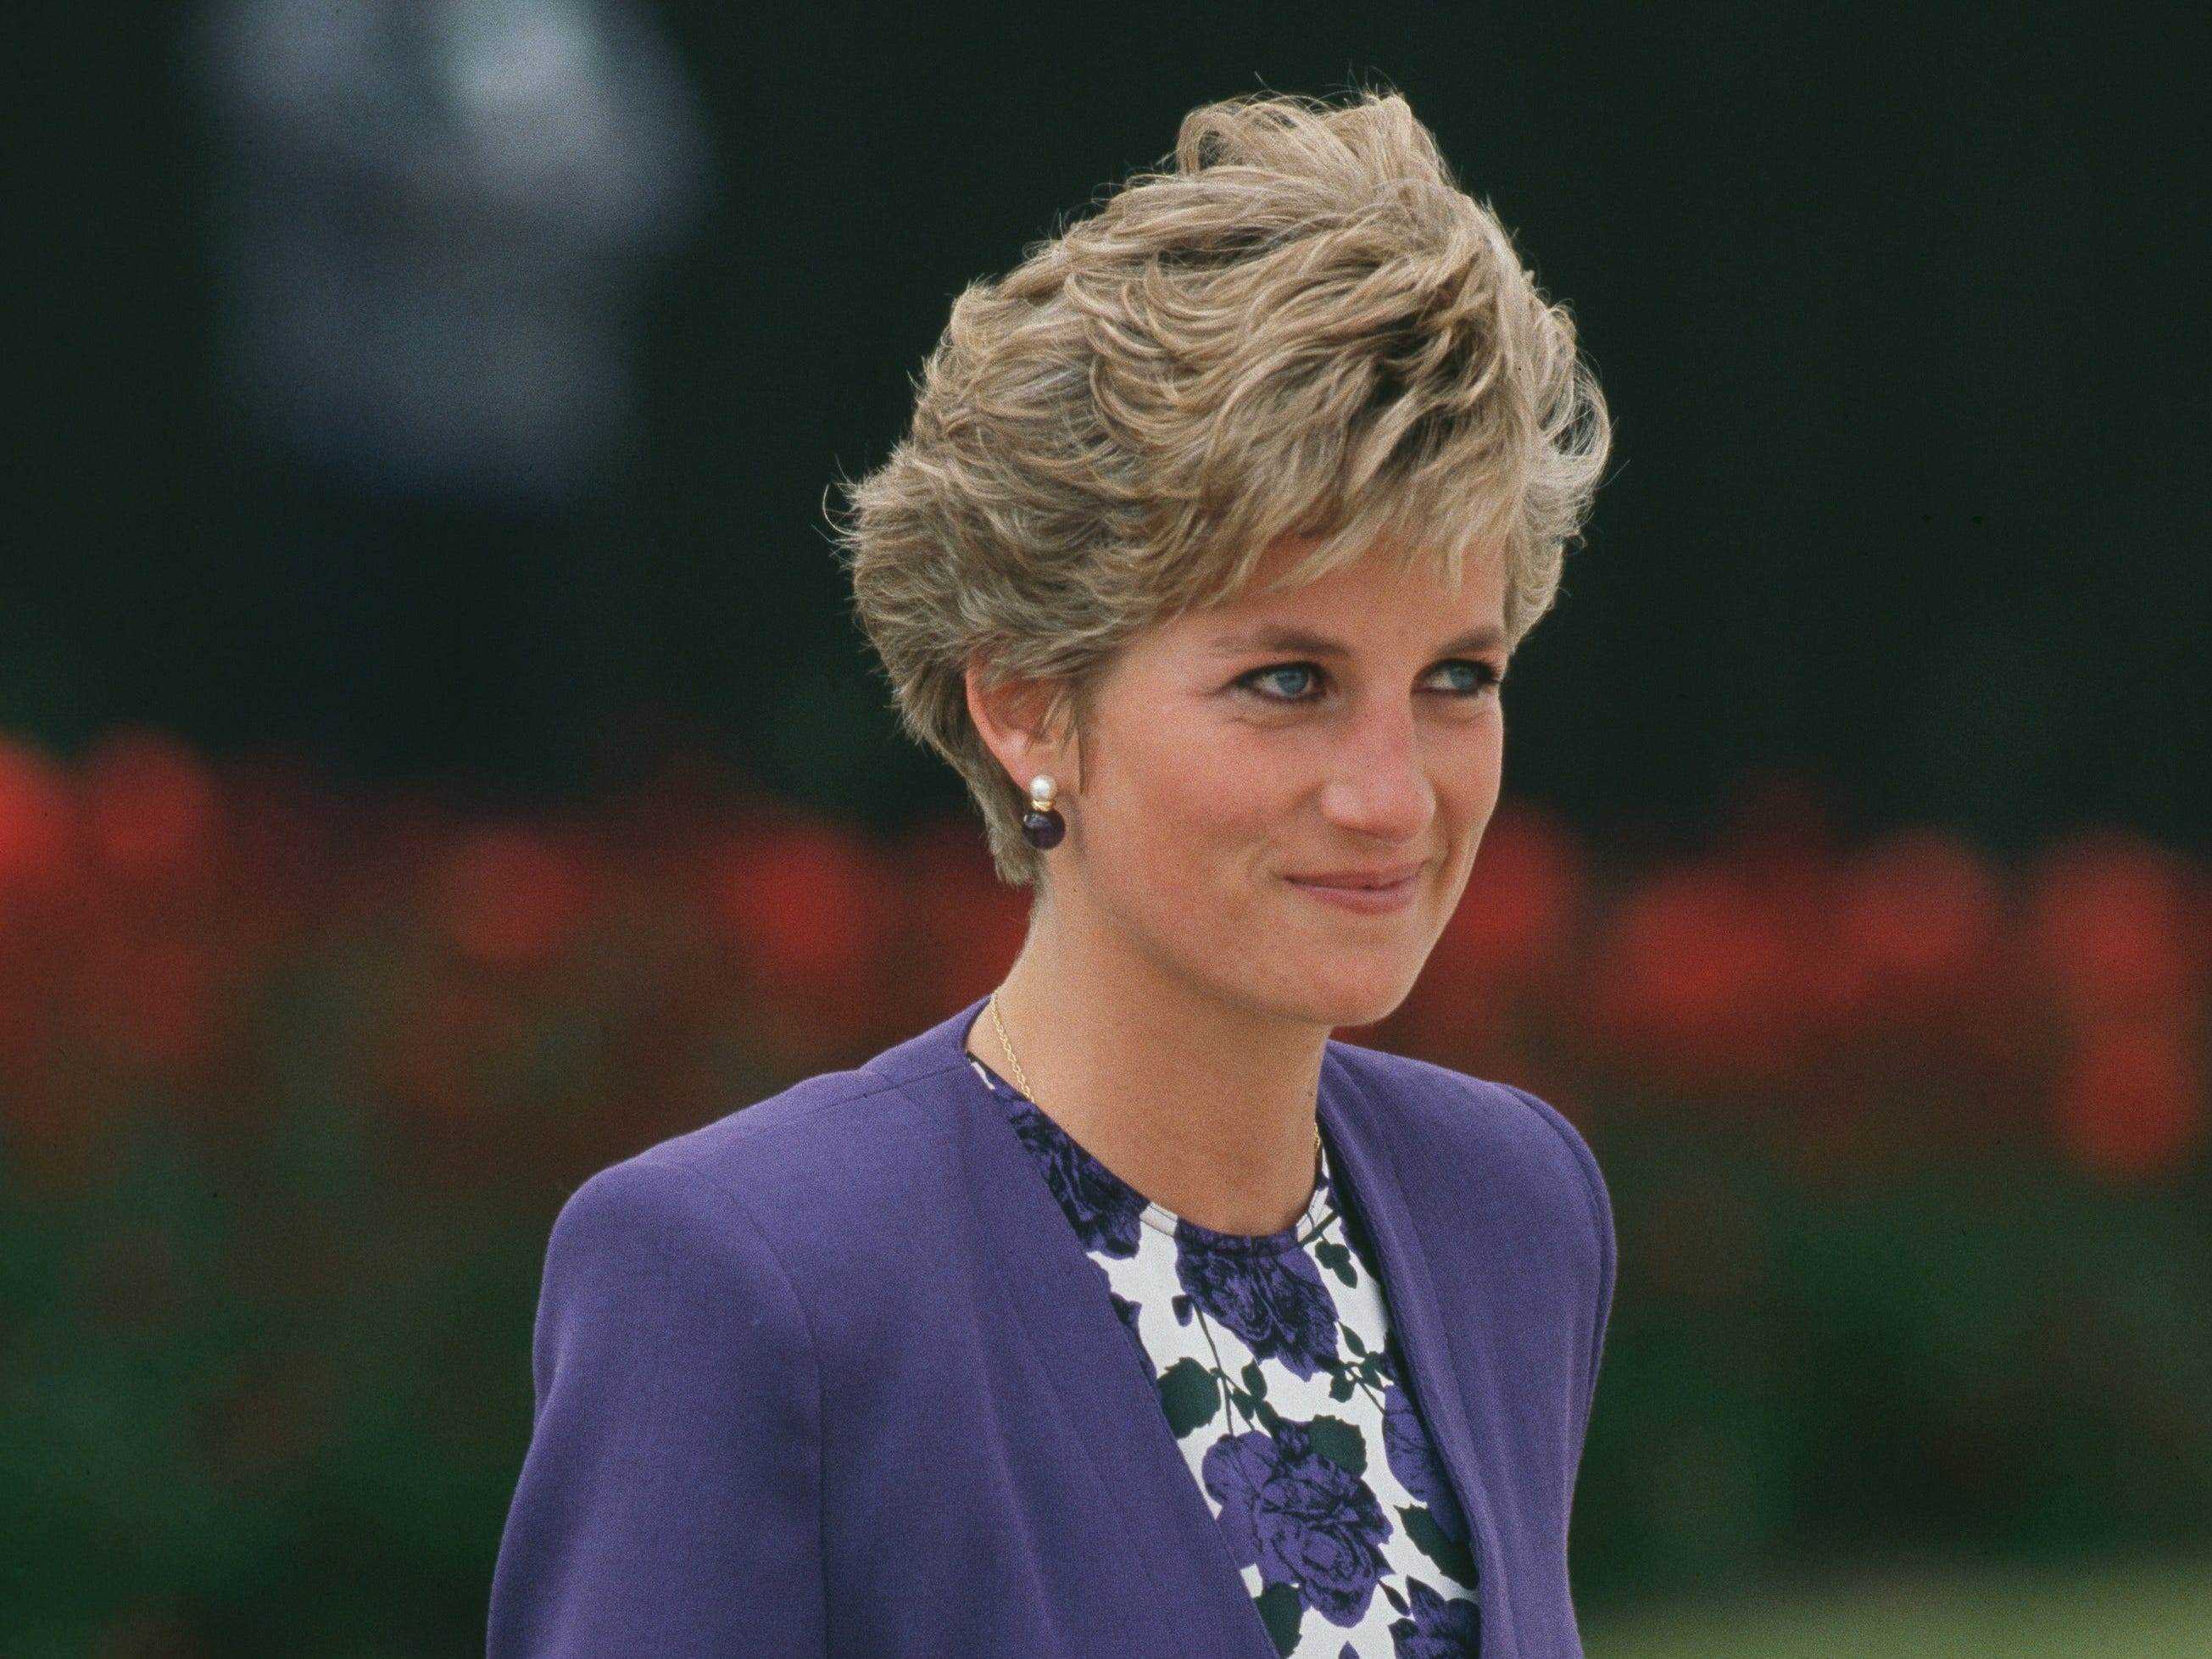 Diana, Prinzessin von Wales (1961 - 1997) am Flughafen Heathrow in London, auf dem Weg nach Brasilien für eine Tour, April 1991.